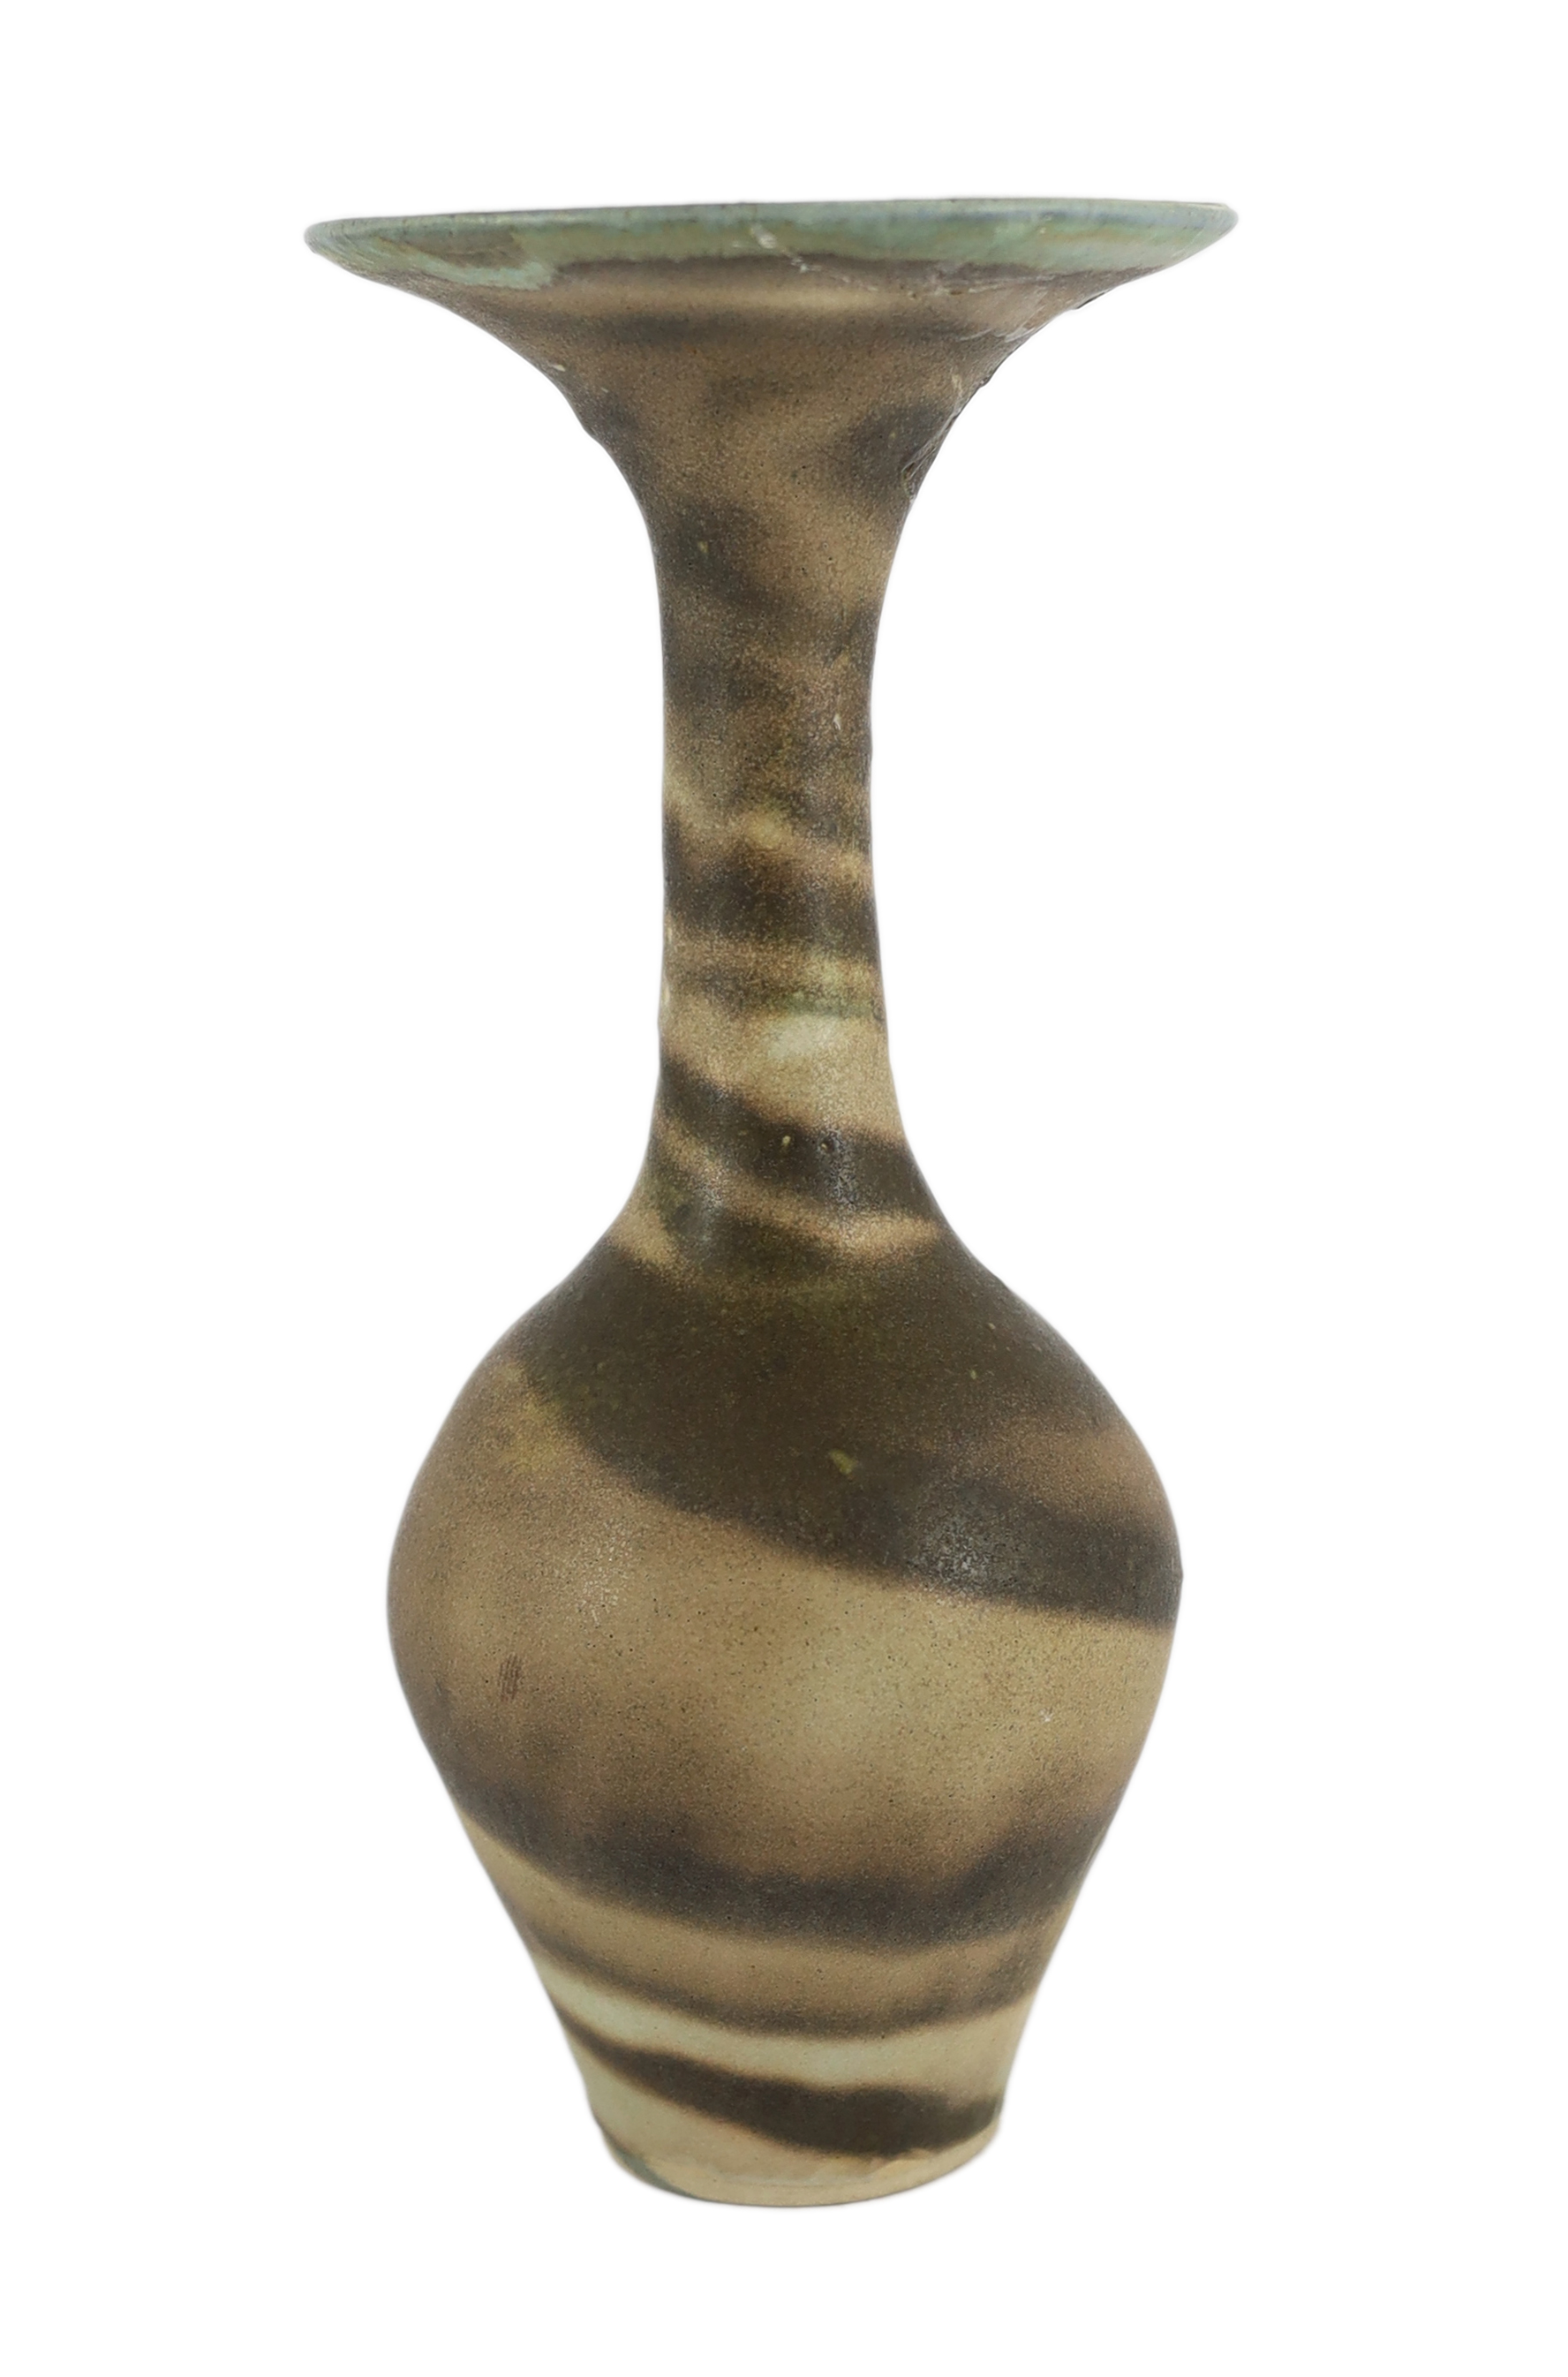 Dame Lucie Rie D.B.E. (1902-1995), a stoneware trumpet neck vase